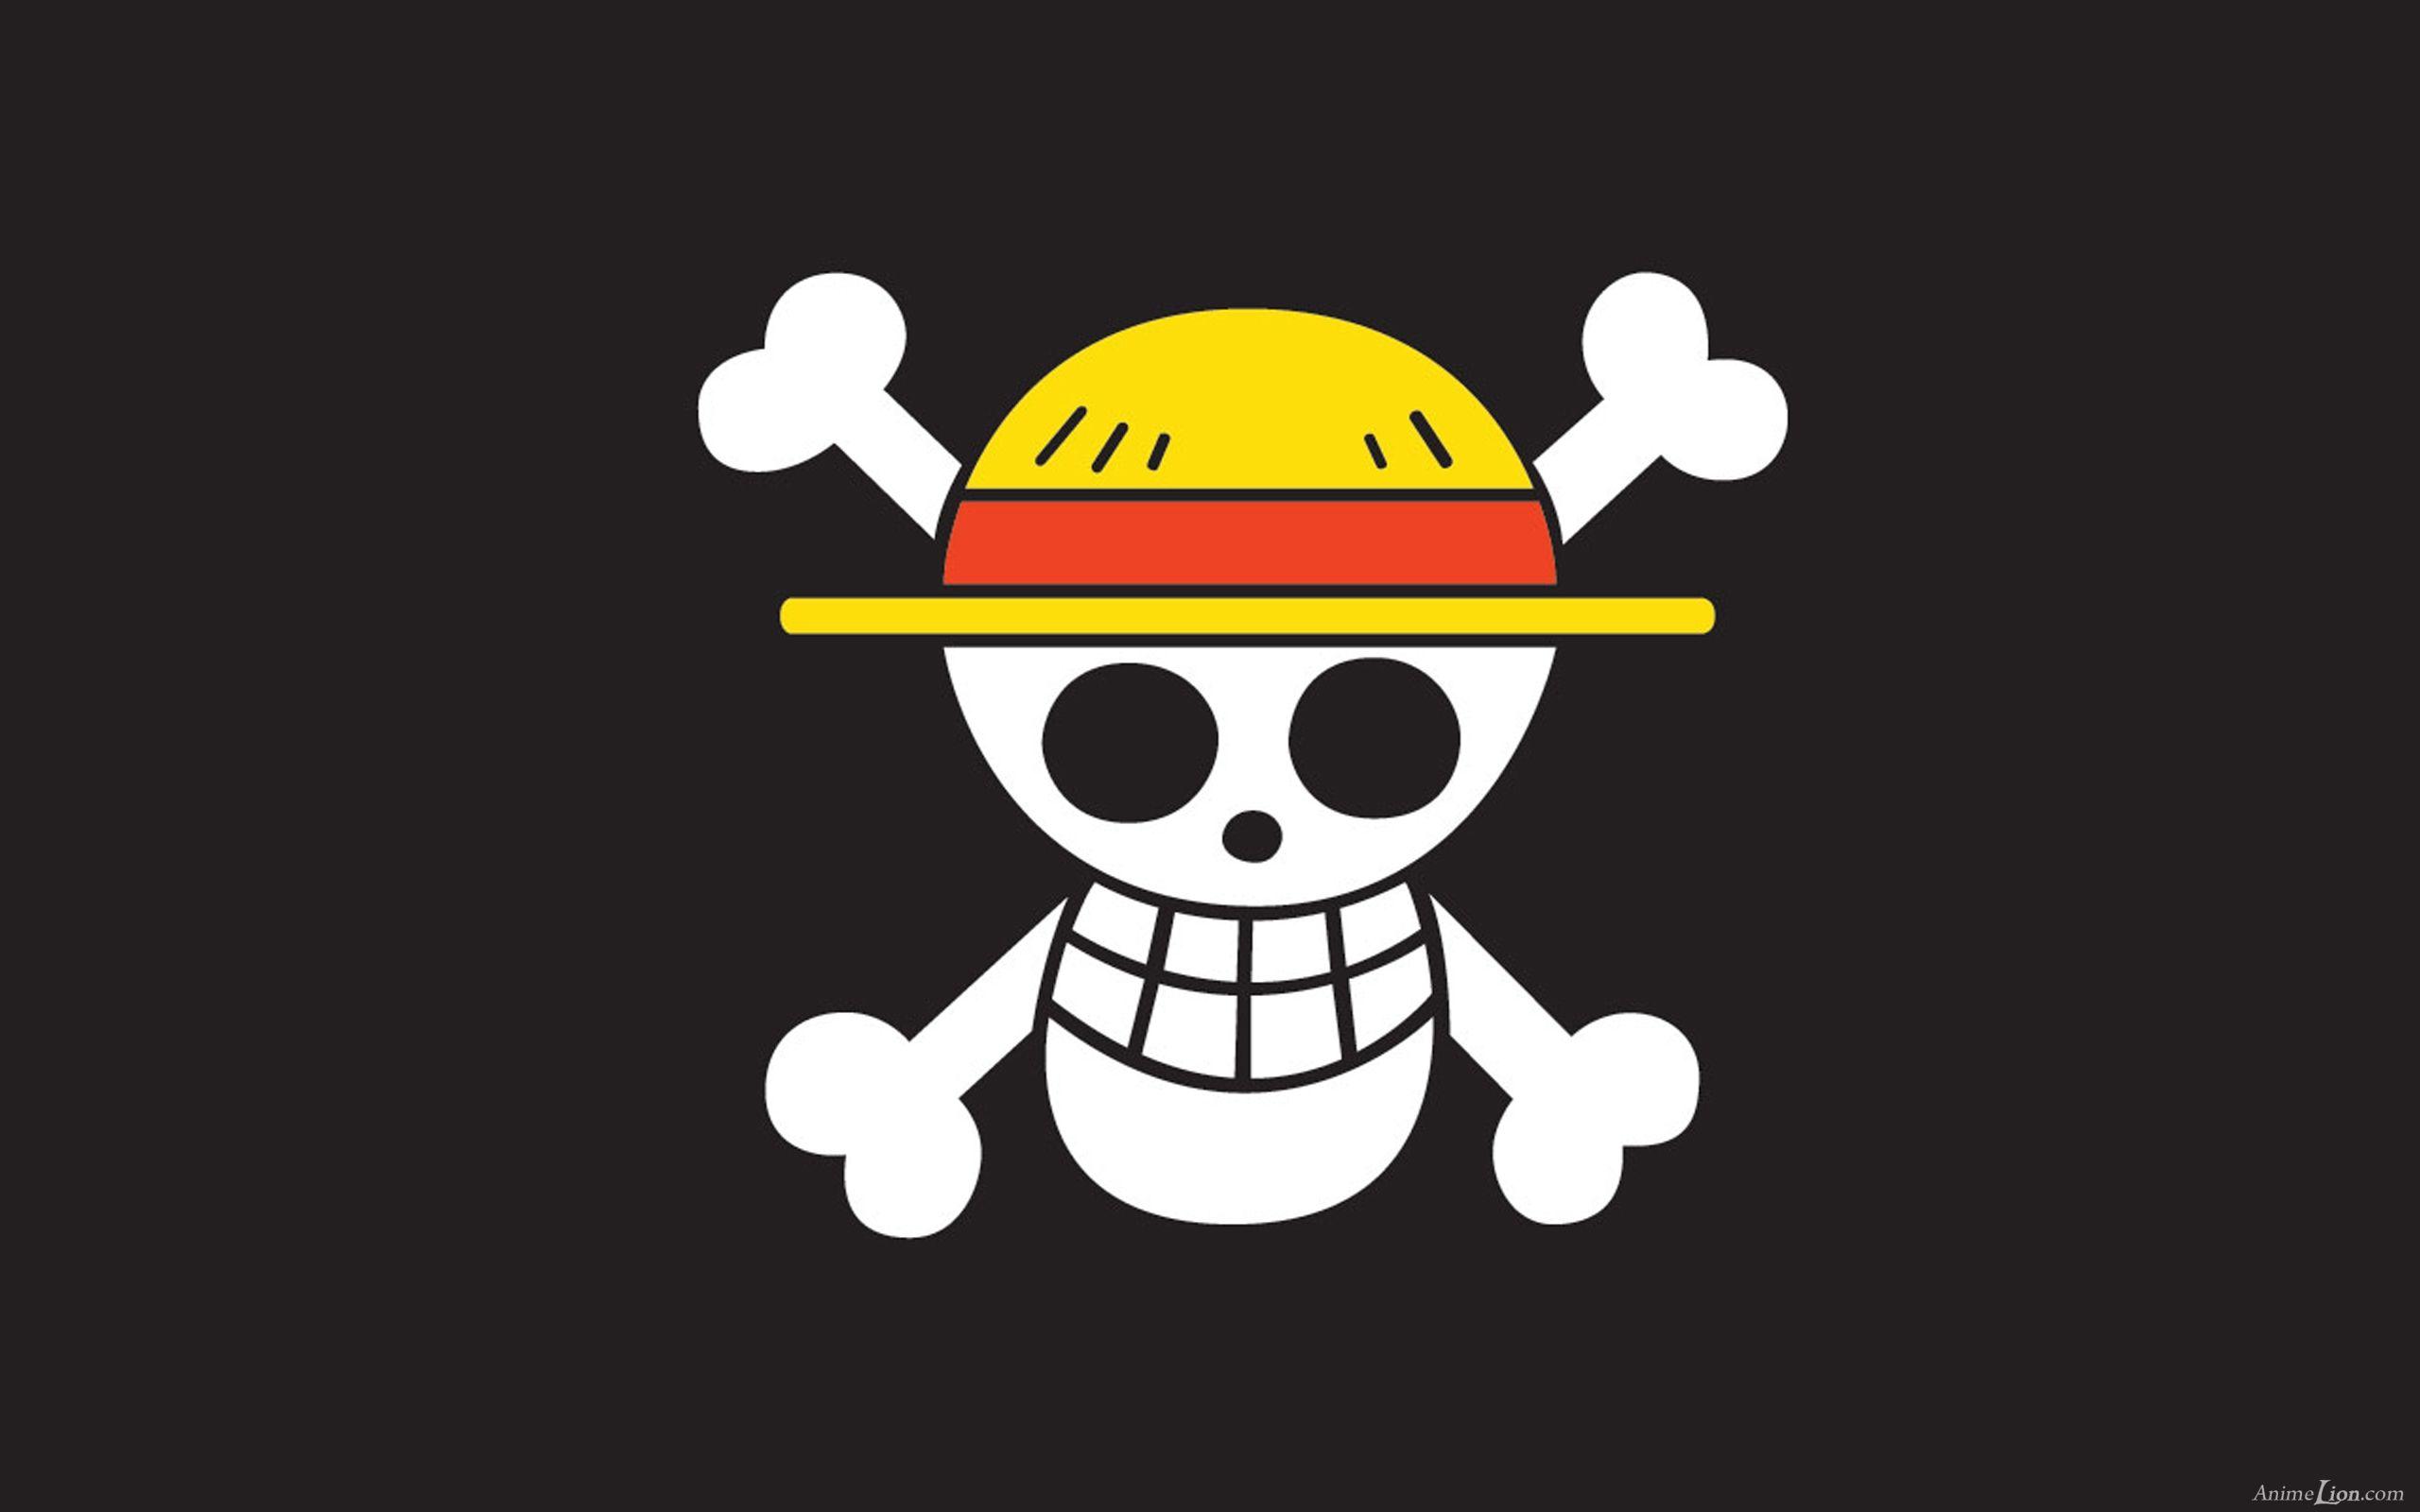 Tổng hợp ảnh One Piece cờ với các biểu tượng huyền thoại của One Piece